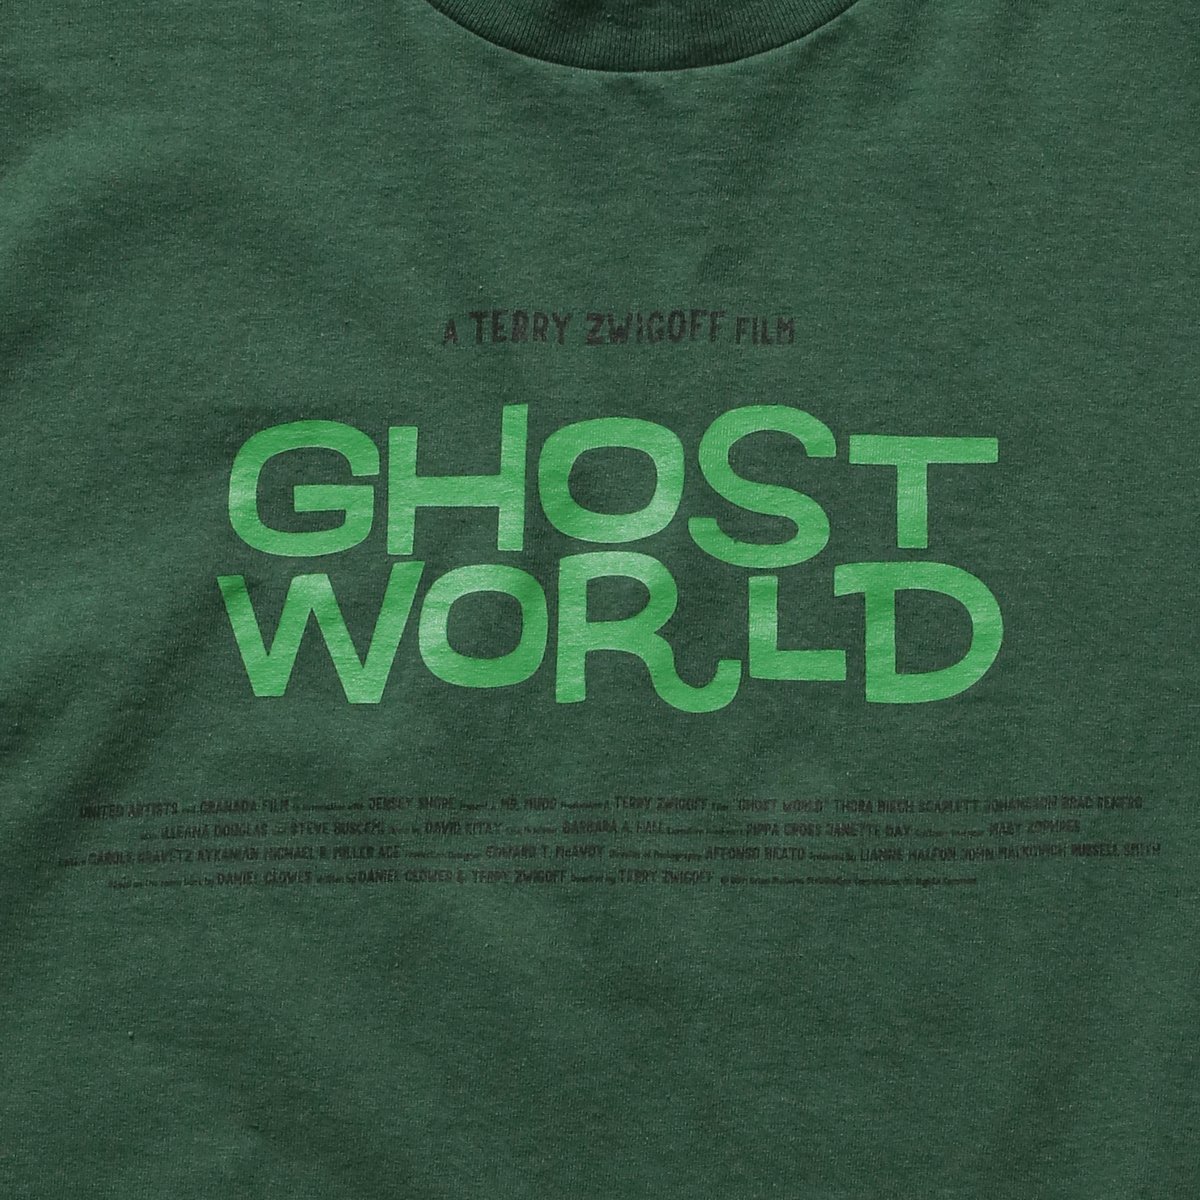 Ghost World×weber] T shirt (logo) | weber